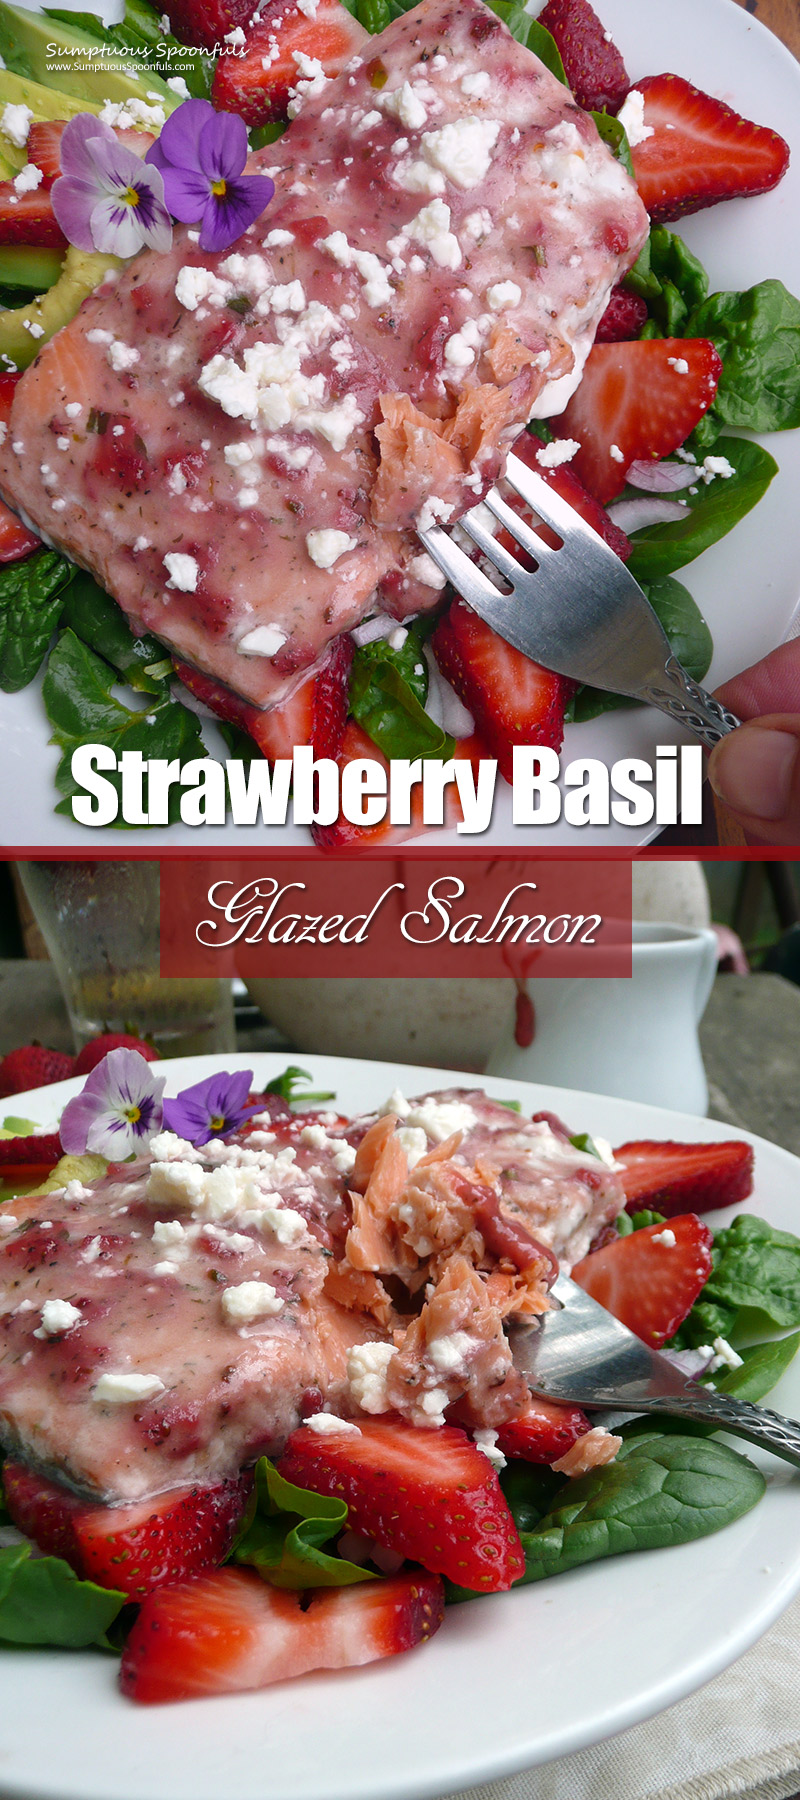 Strawberry Basil Glazed Salmon long pinterest worthy image